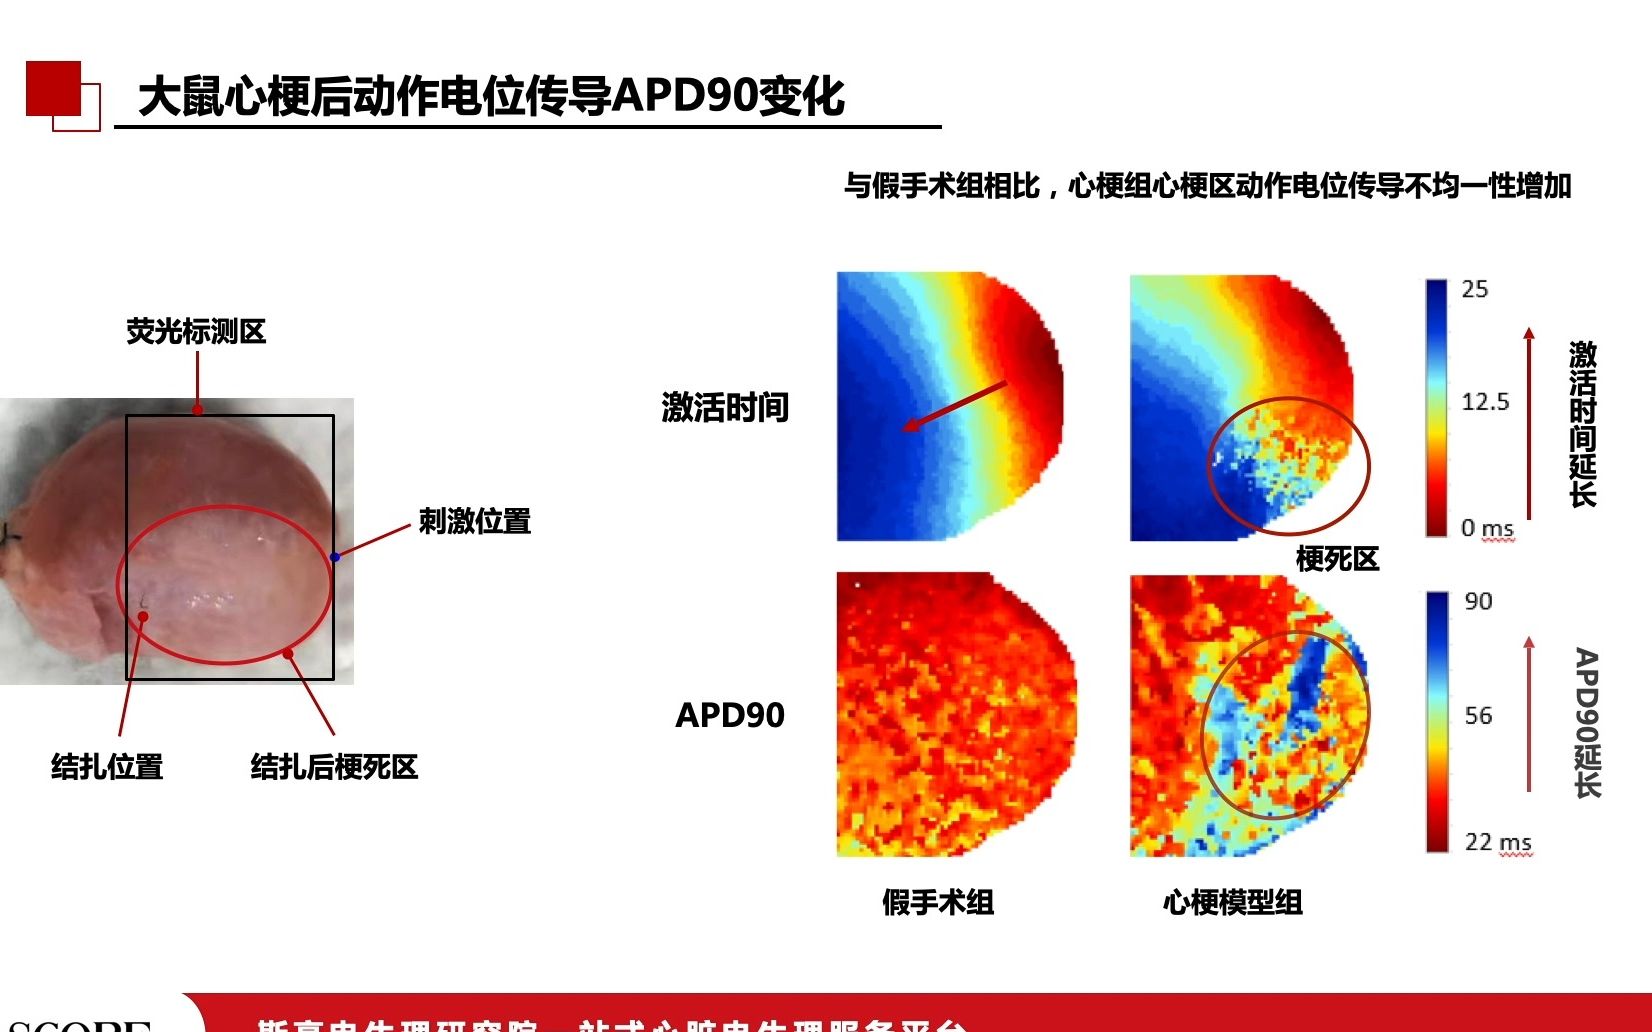 大鼠心肌梗死（MI）模型optical mapping检测